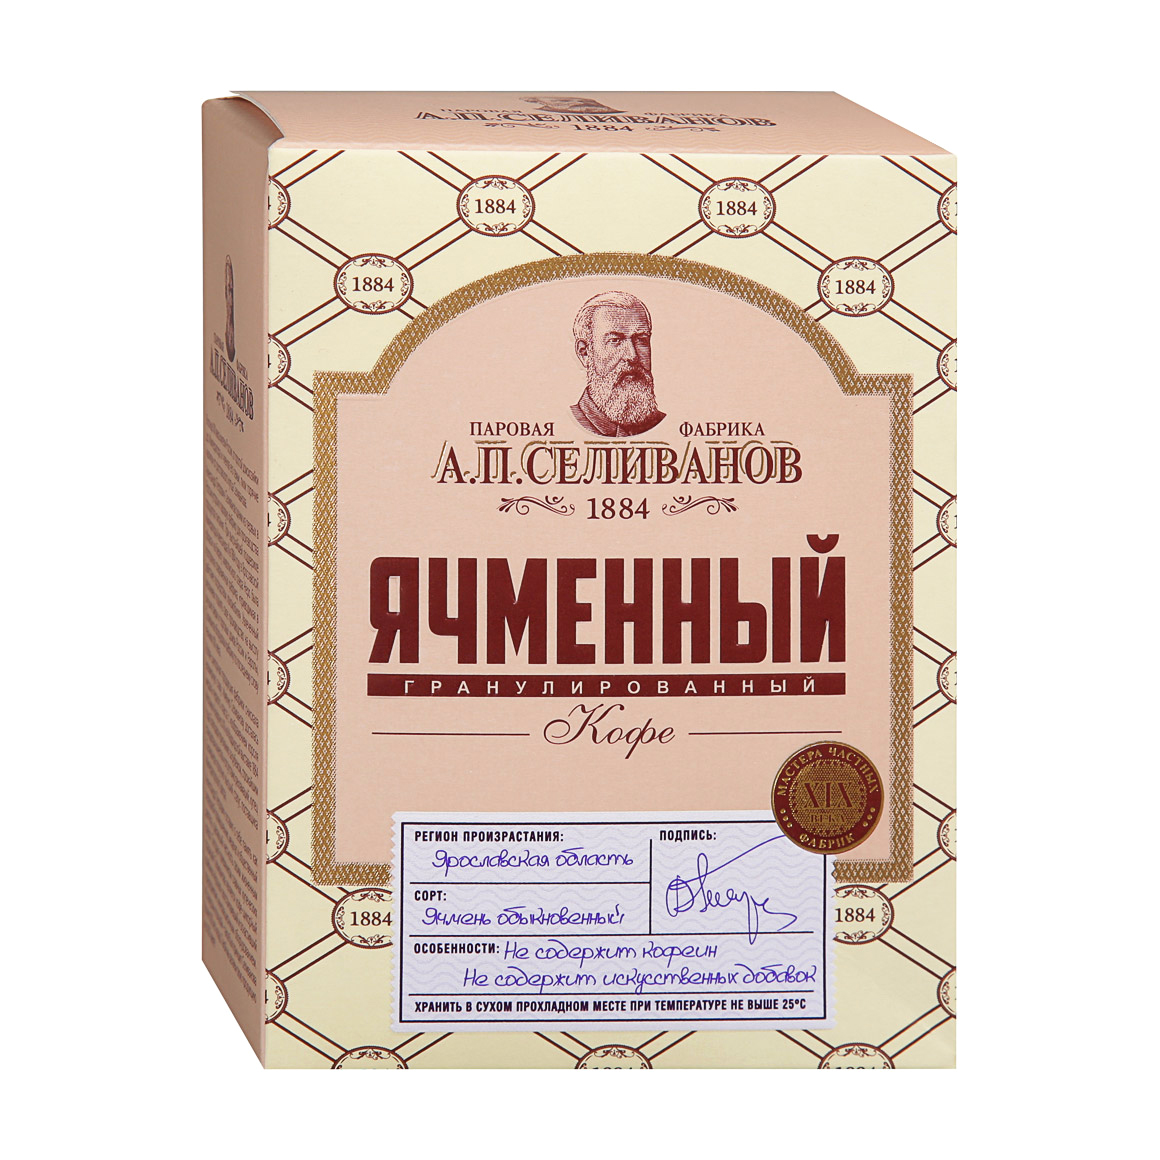 Кофе А.П.Селиванов Ячменный гранула 85 г